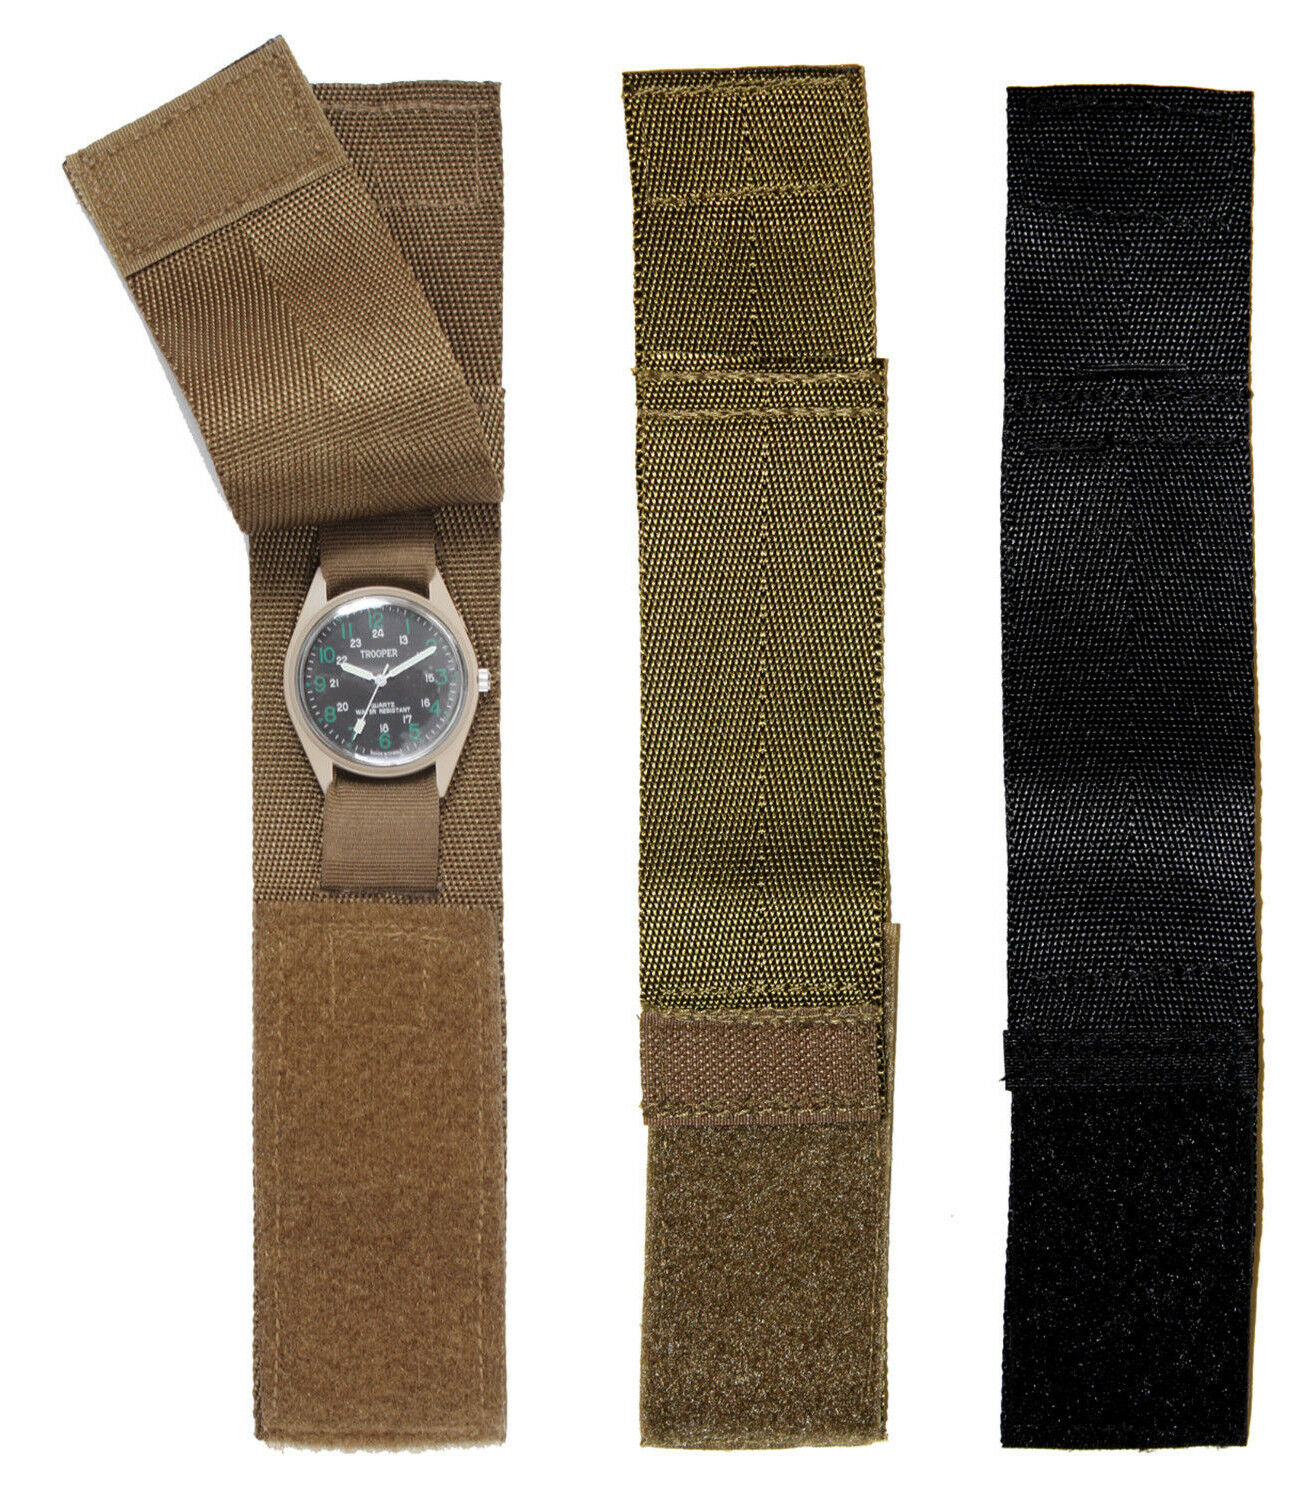 Rothco Commando Wrist Watchband